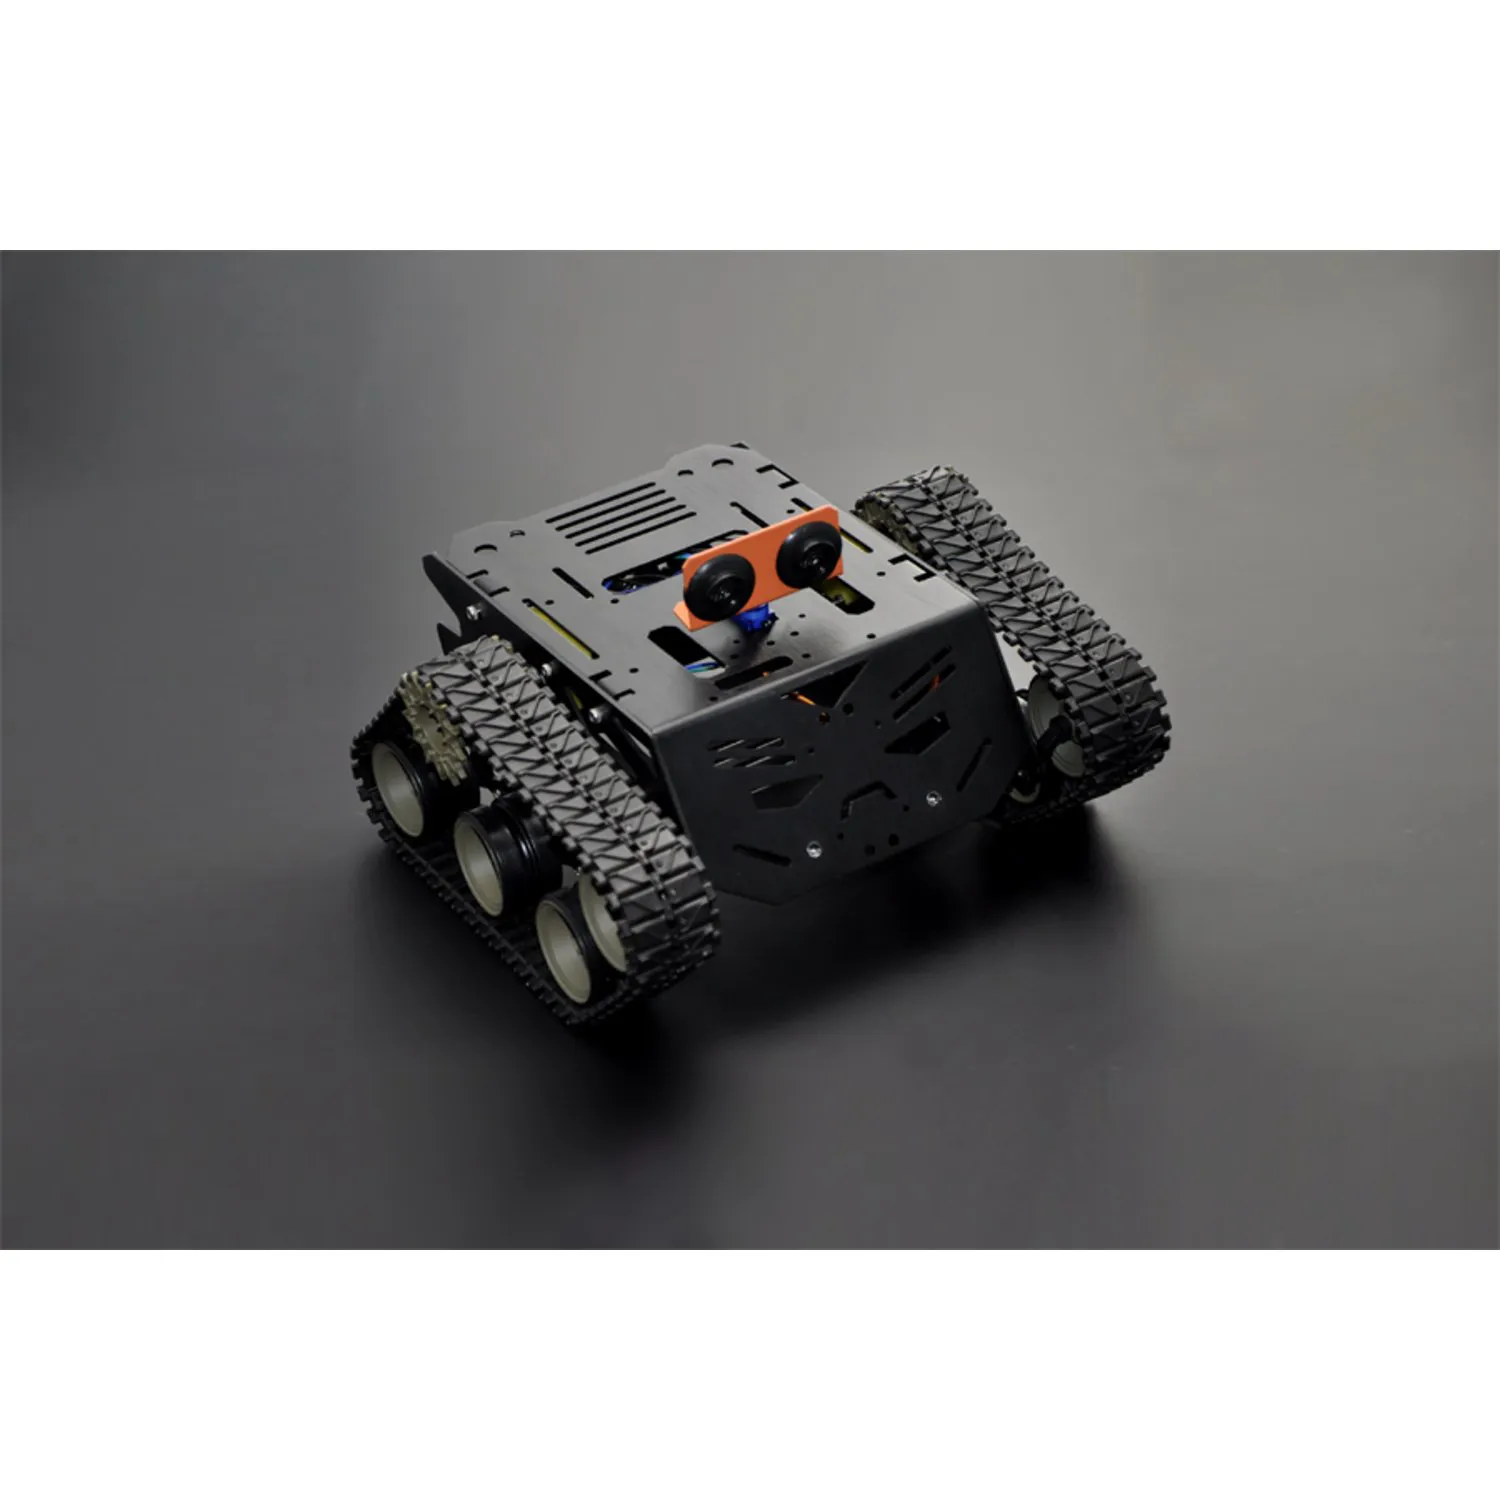 Photo of Devastator : Tank Mobile Robot Platform (Metal DC Gear Motor)